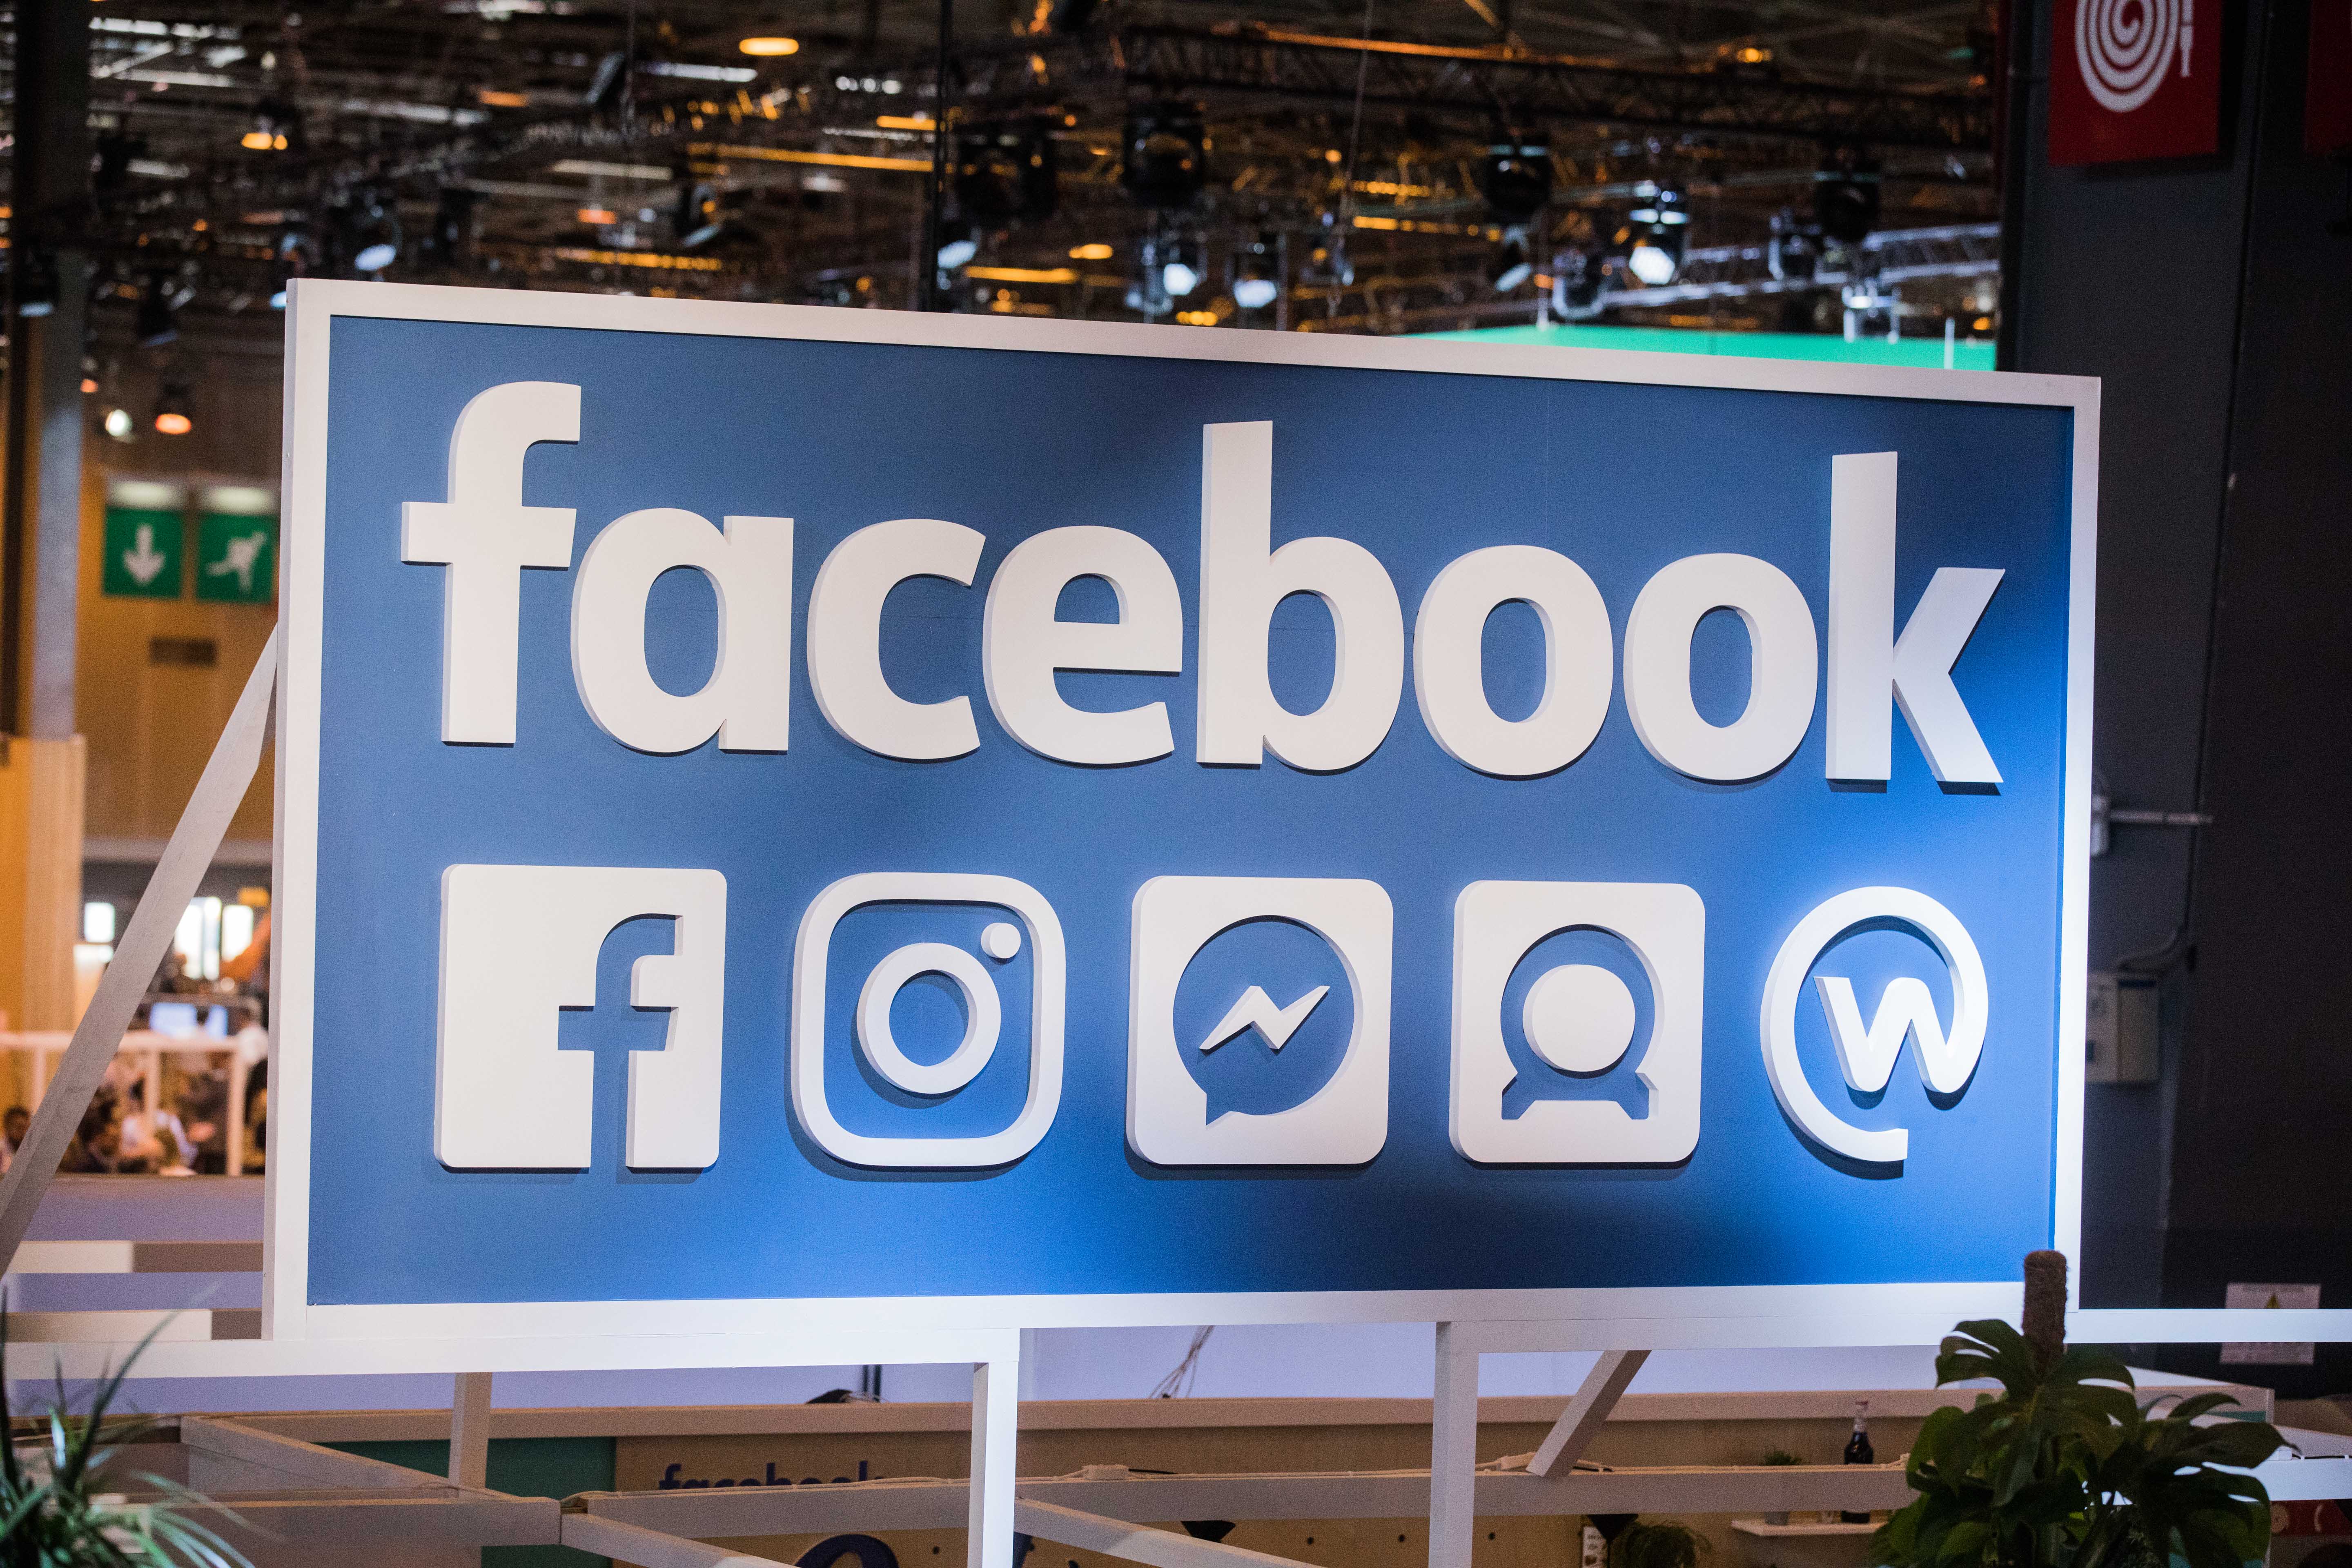 Original Facebook Logo - Facebook In Talks to Produce Original TV Shows, Report Says | Fortune